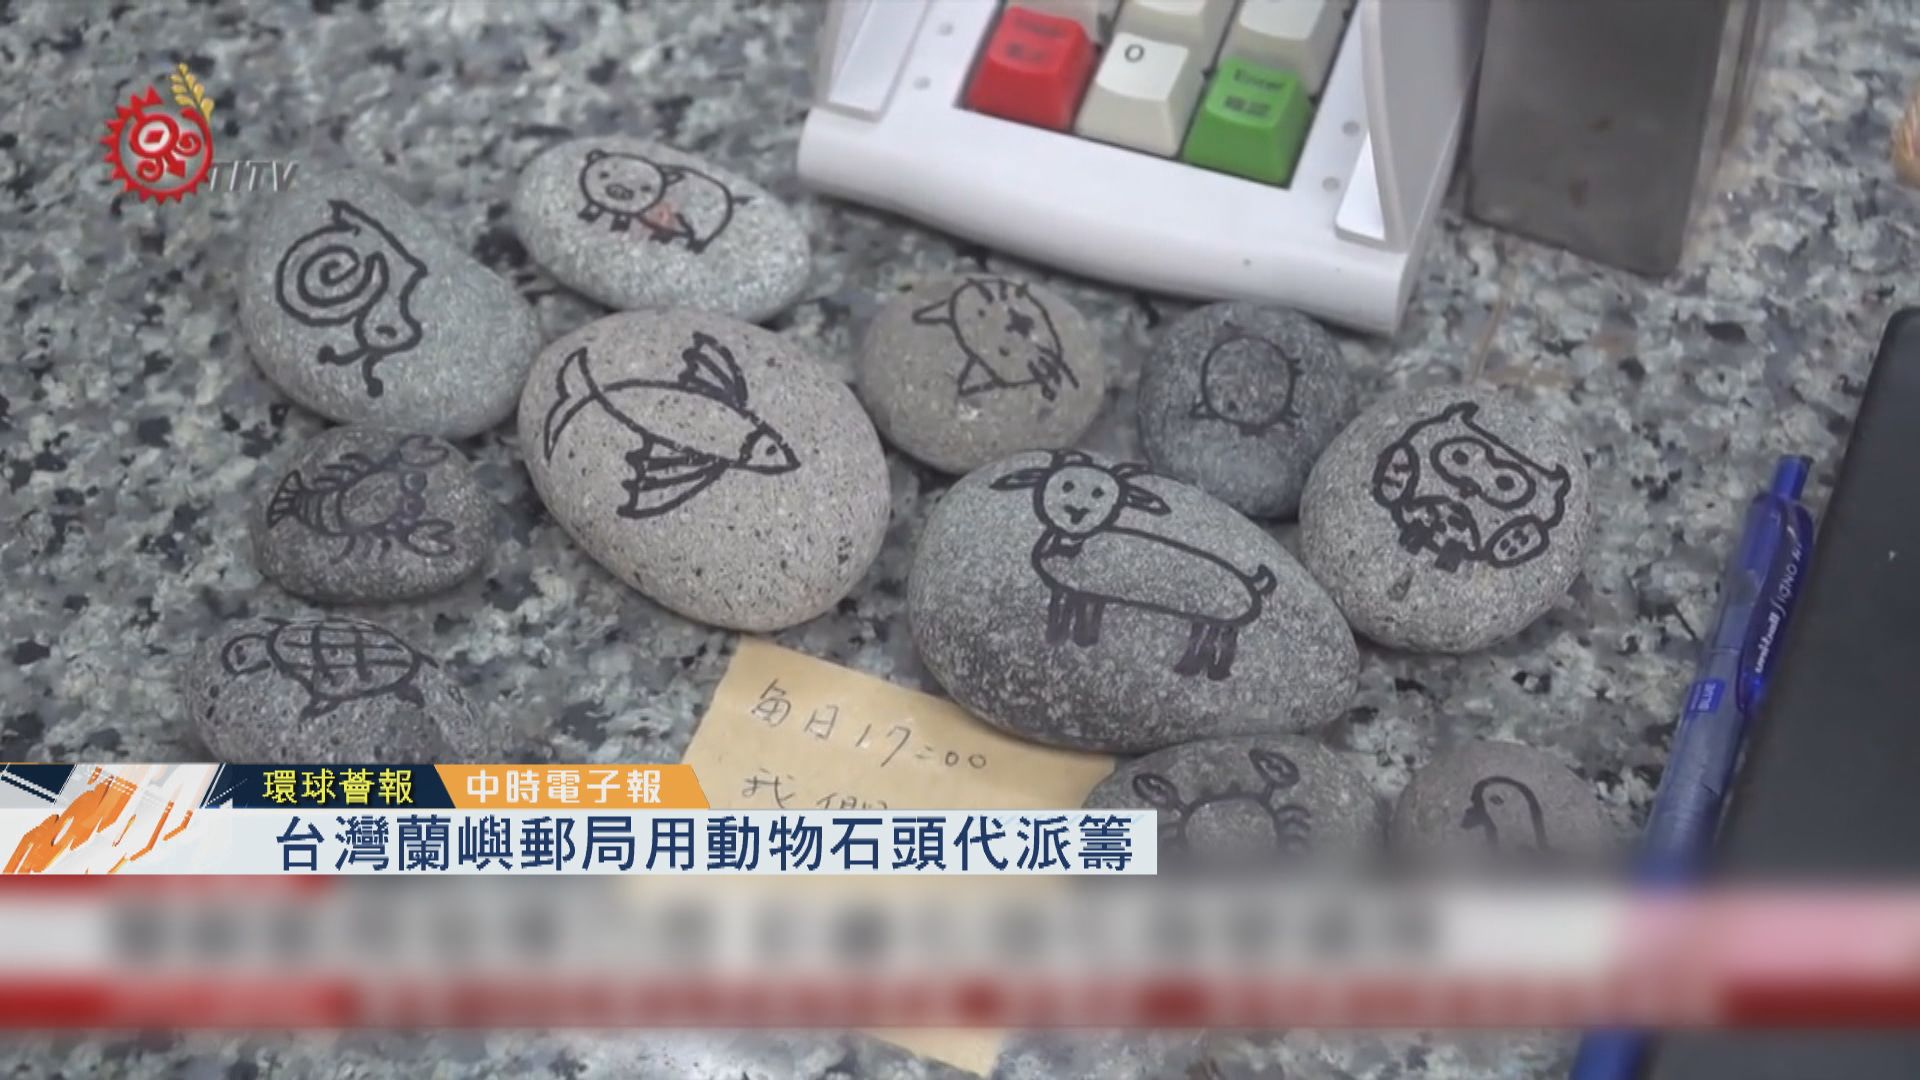 【環球薈報】台灣蘭嶼郵局用動物石頭代派籌